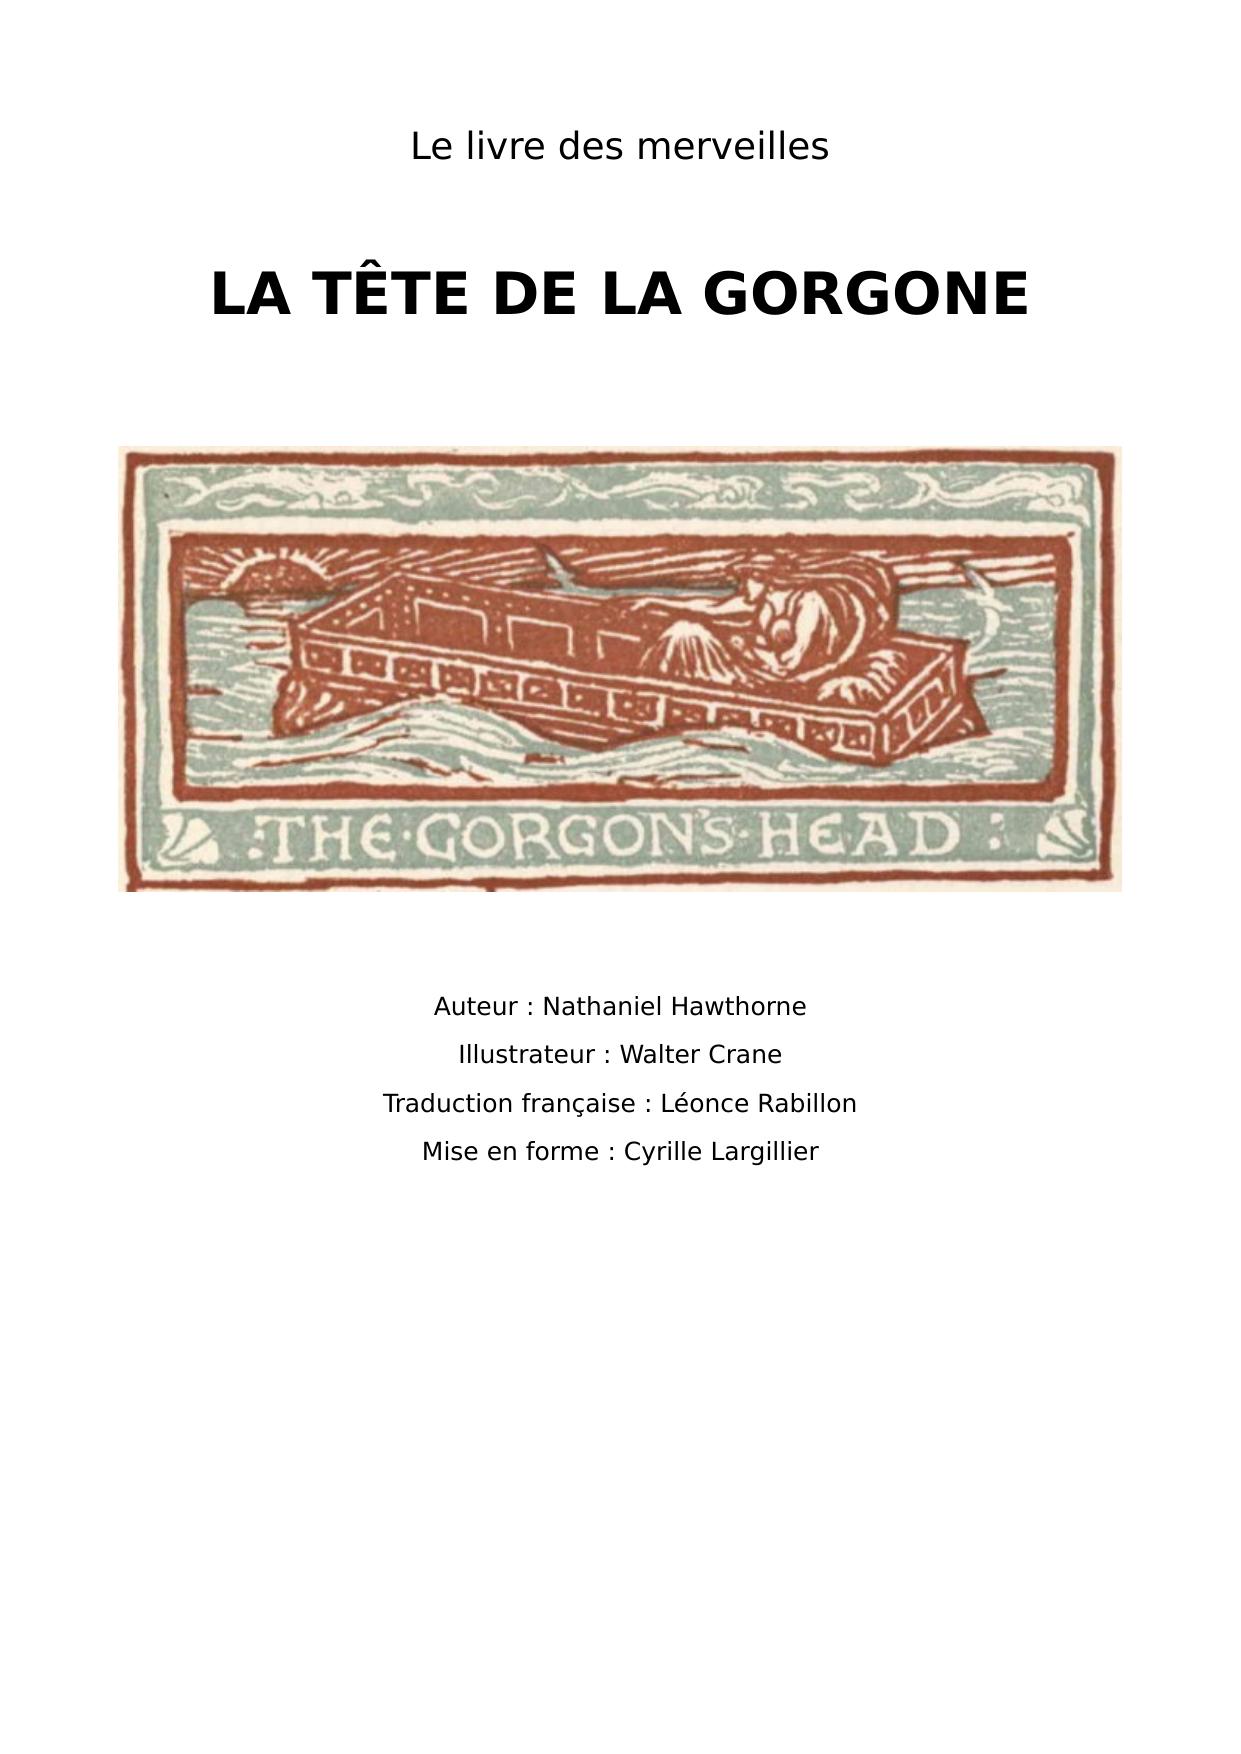 La tête de la Gorgone